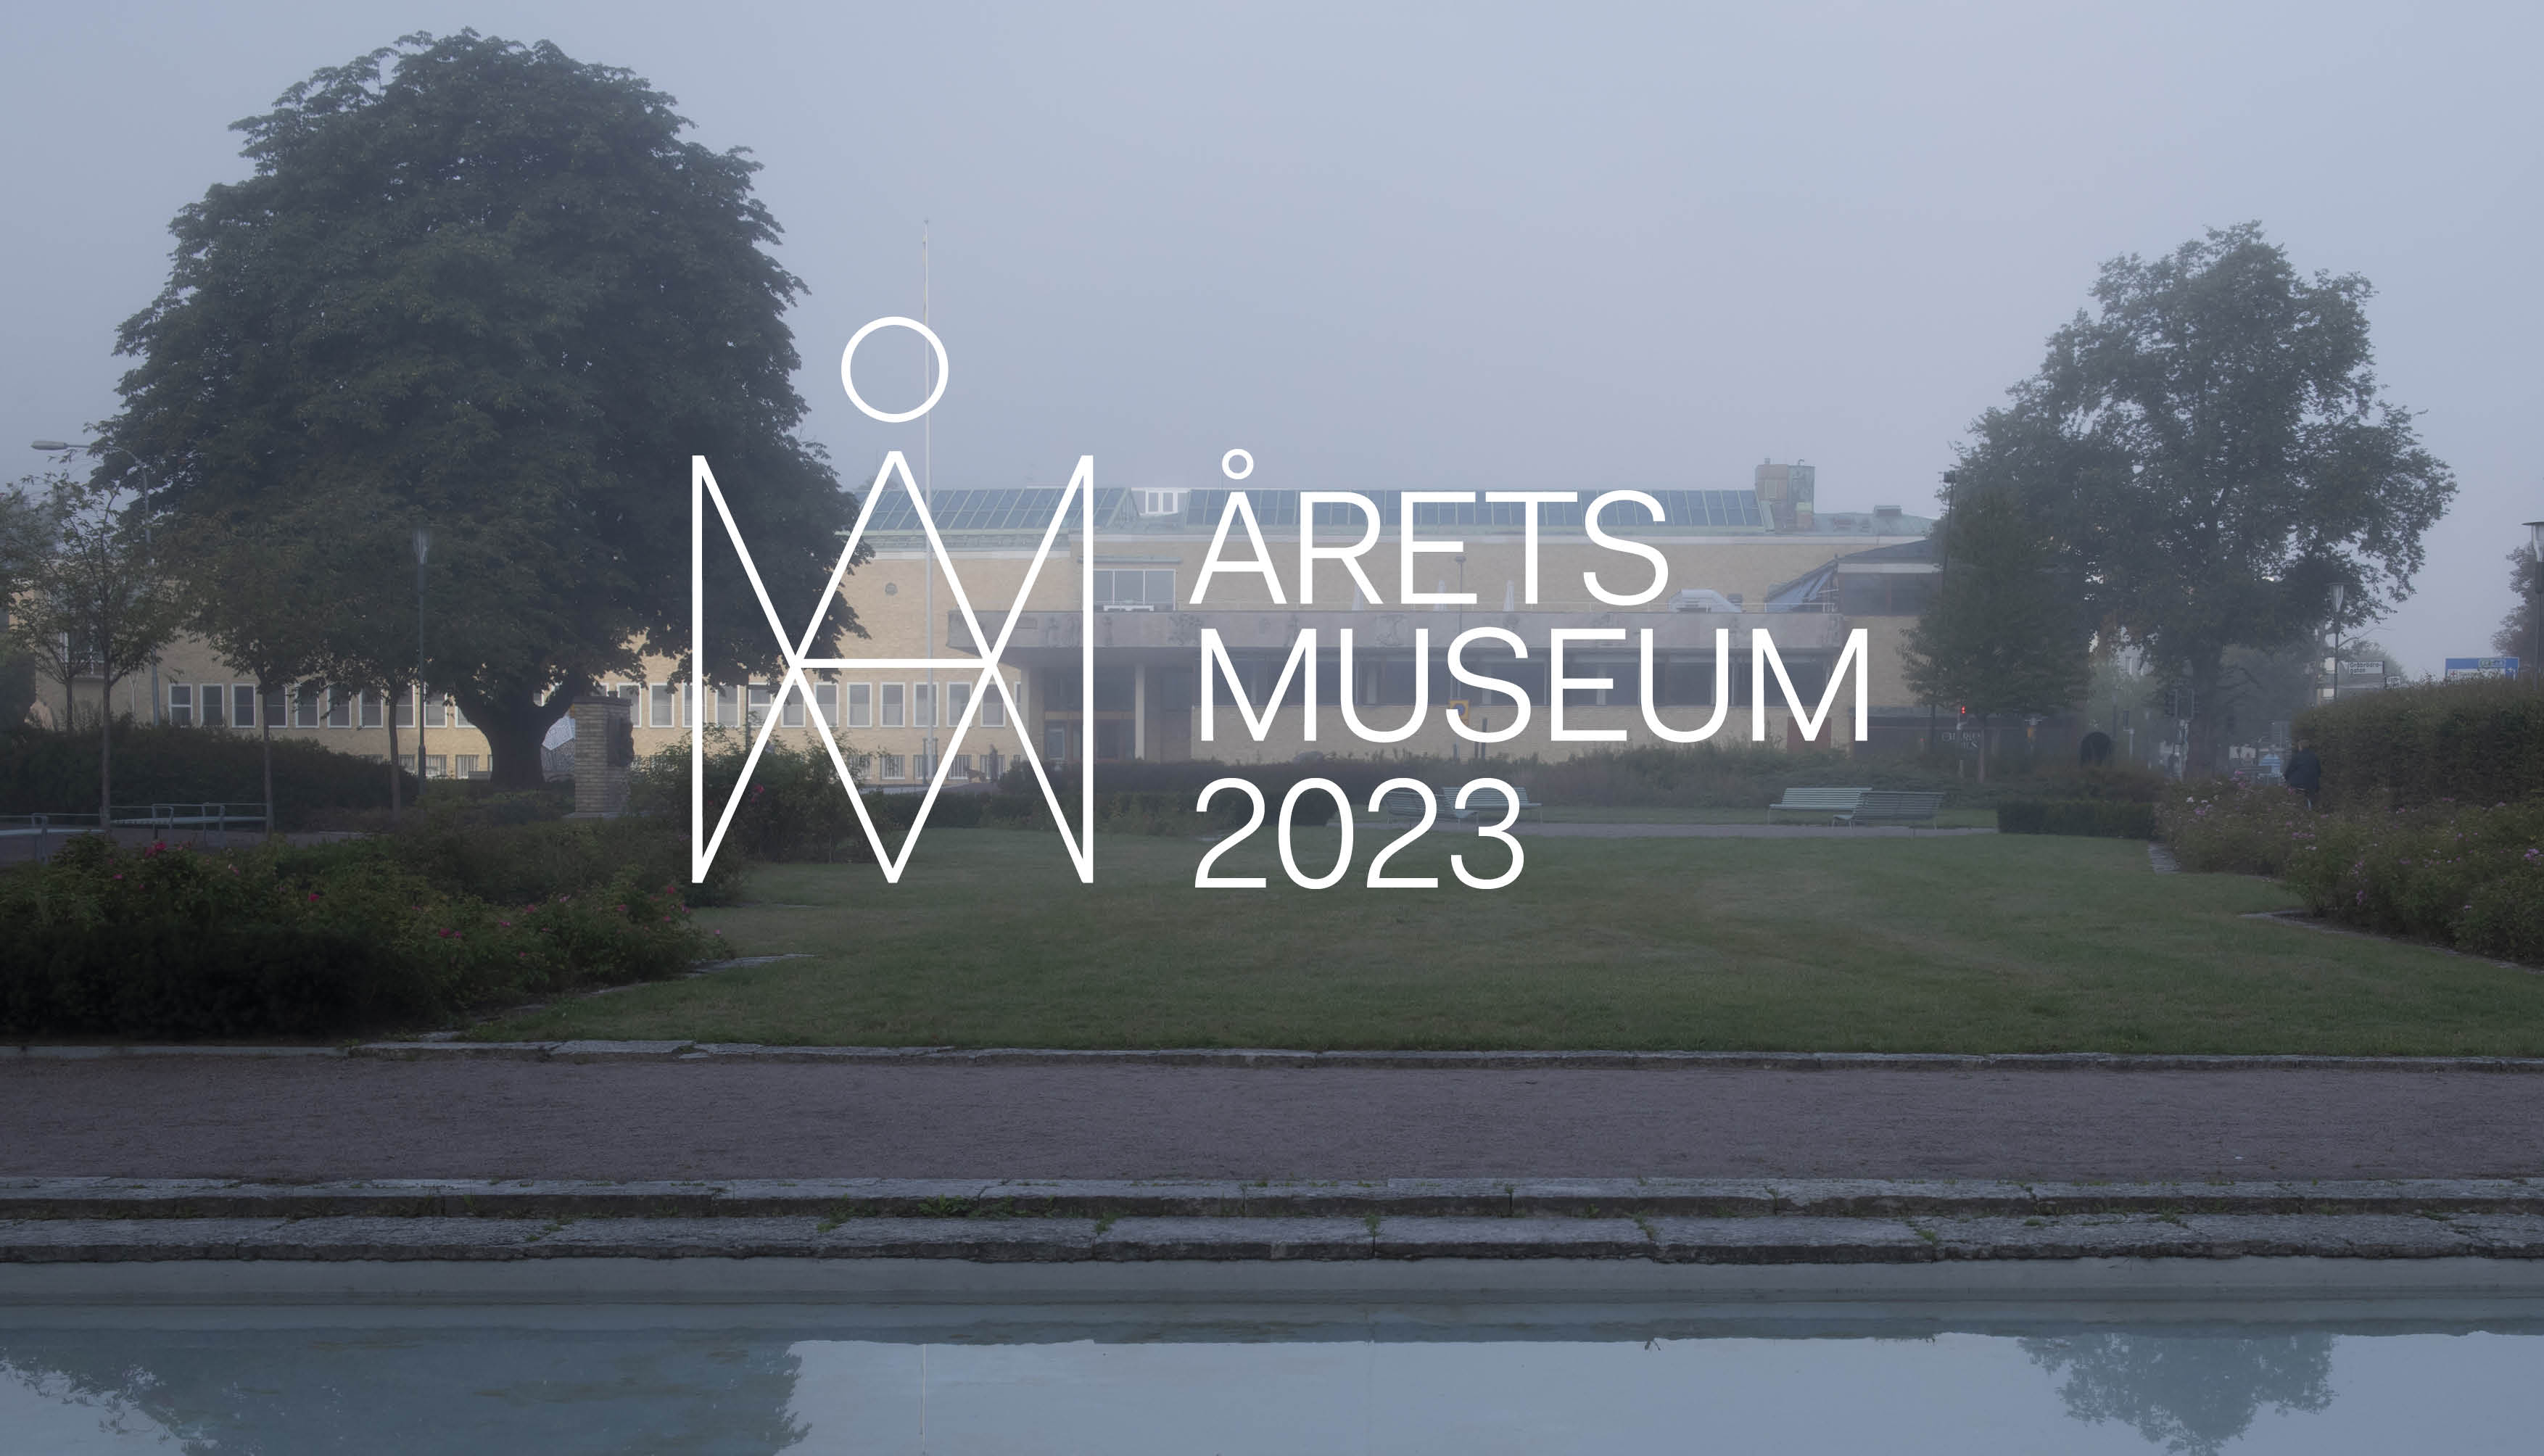 Drömsk bild på museibyggnaden med texten Årets museum 2023 på.